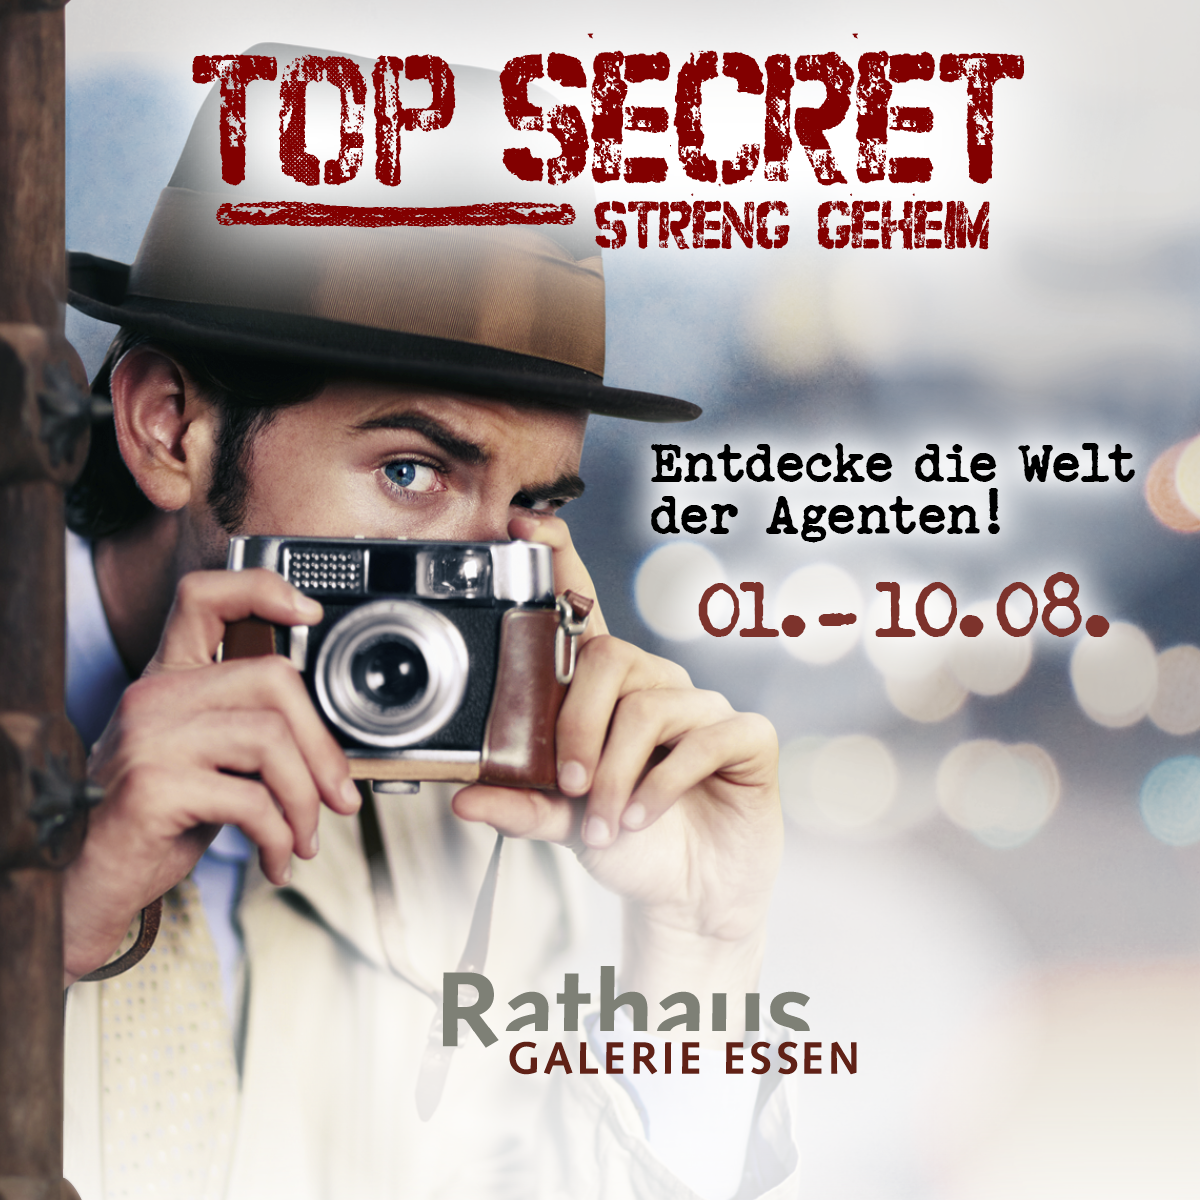 Top Secret: de interactieve spionagetentoonstelling 1